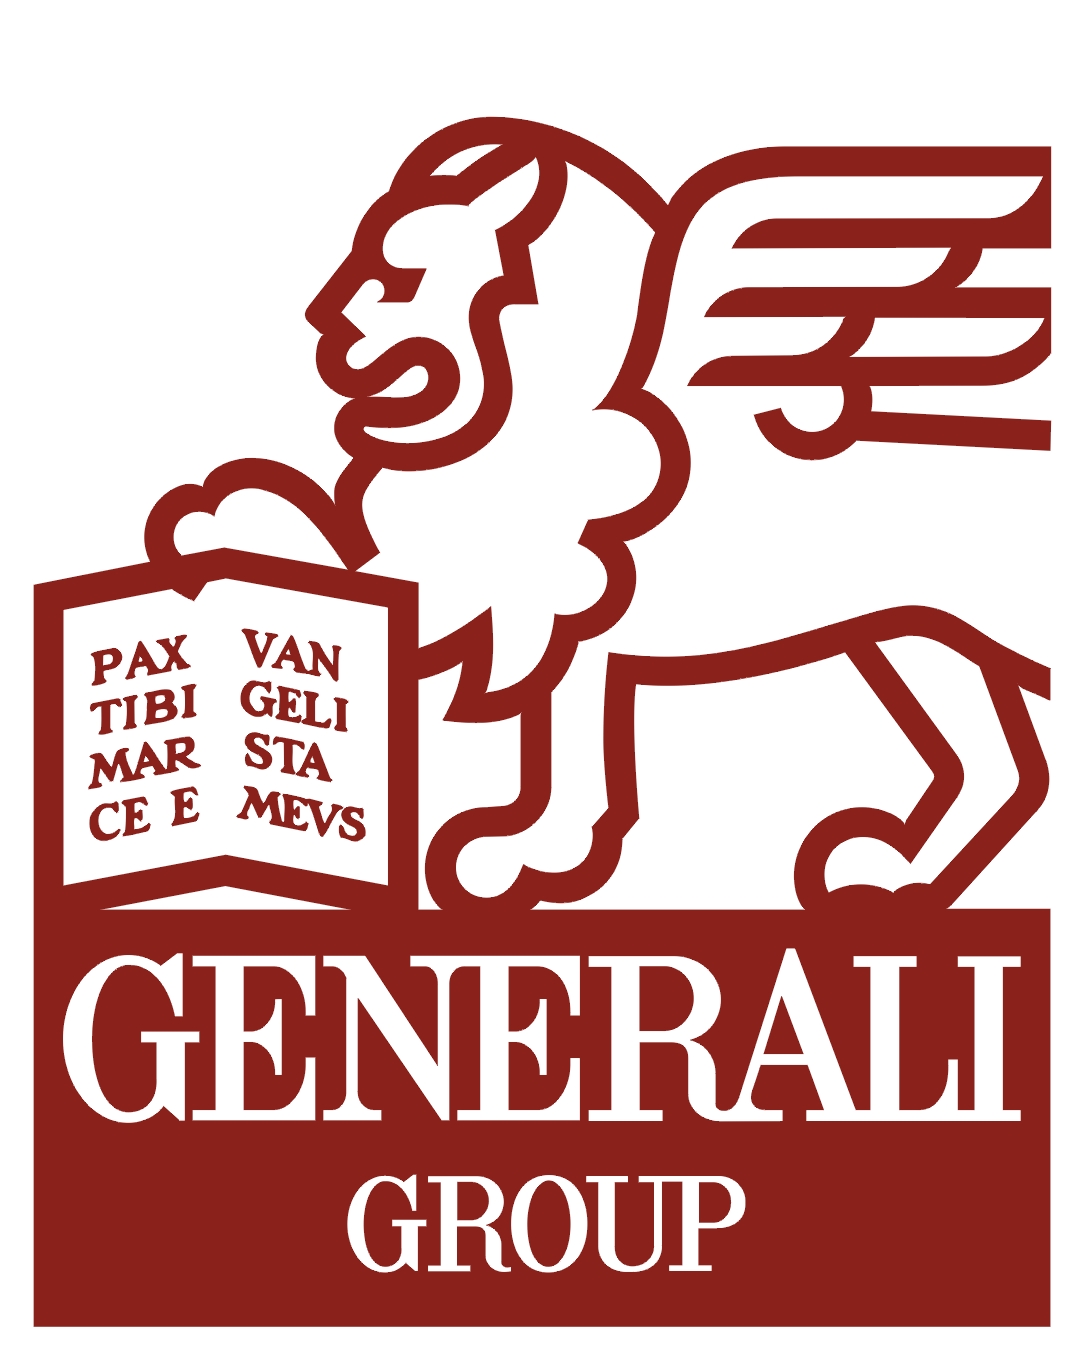 generali_logo - Insider Monkey